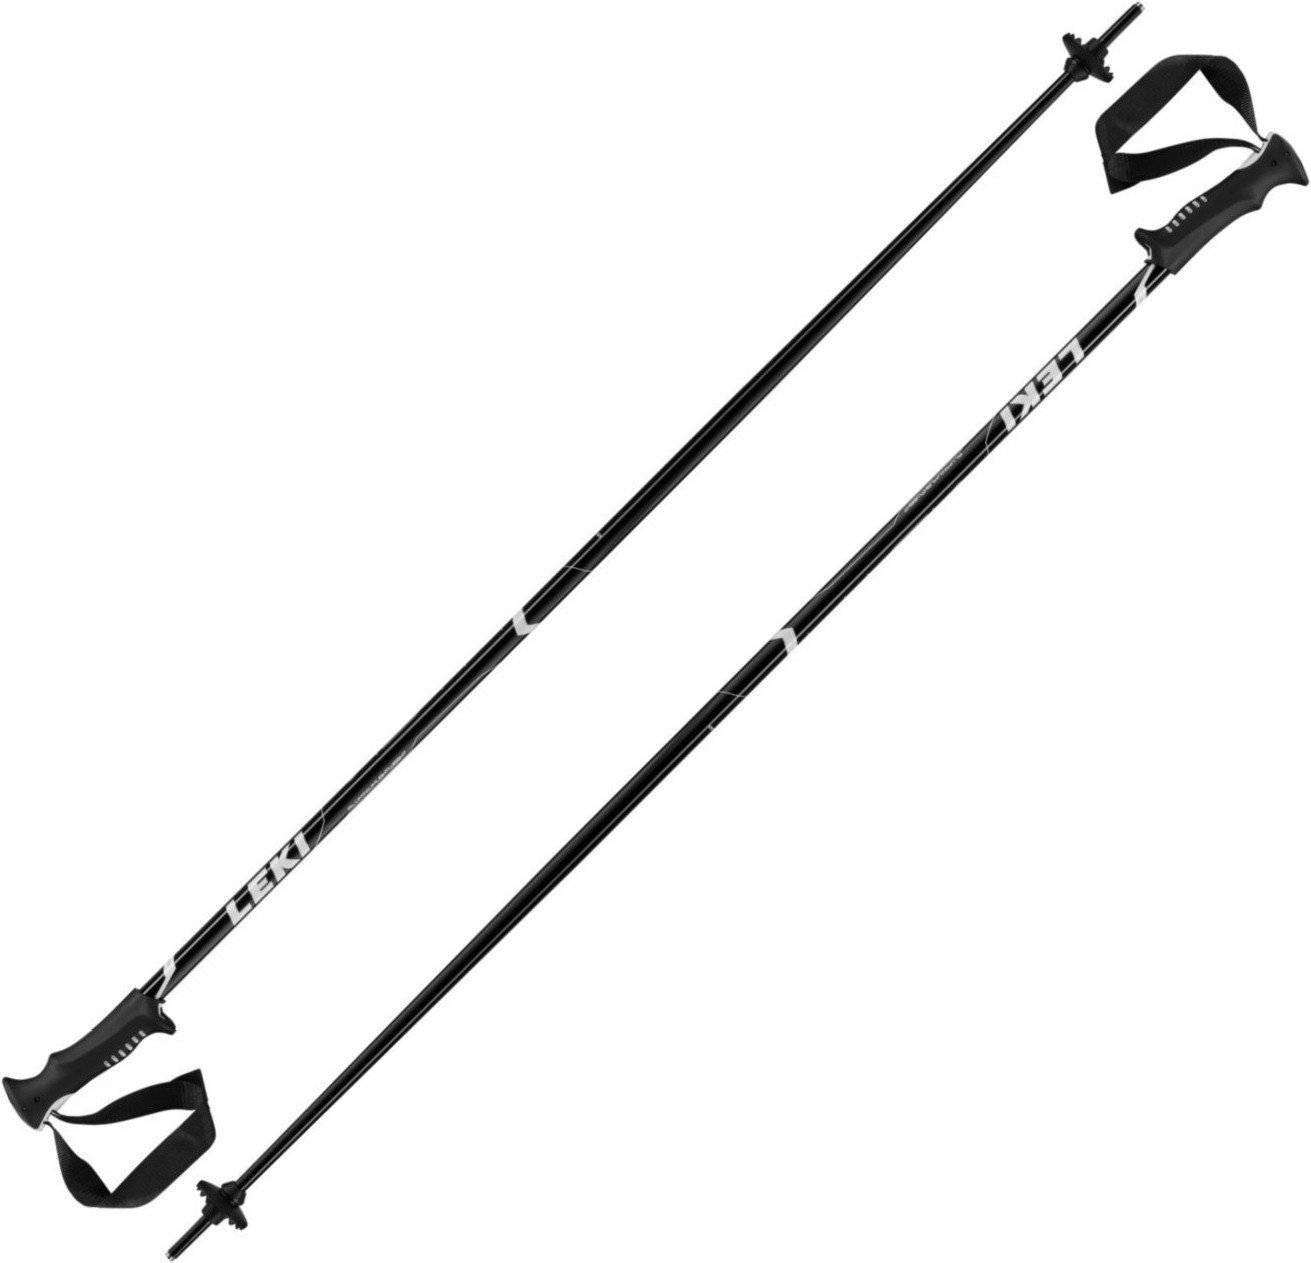 Ski Poles Leki Vista Black/White-Silver 130 18/19